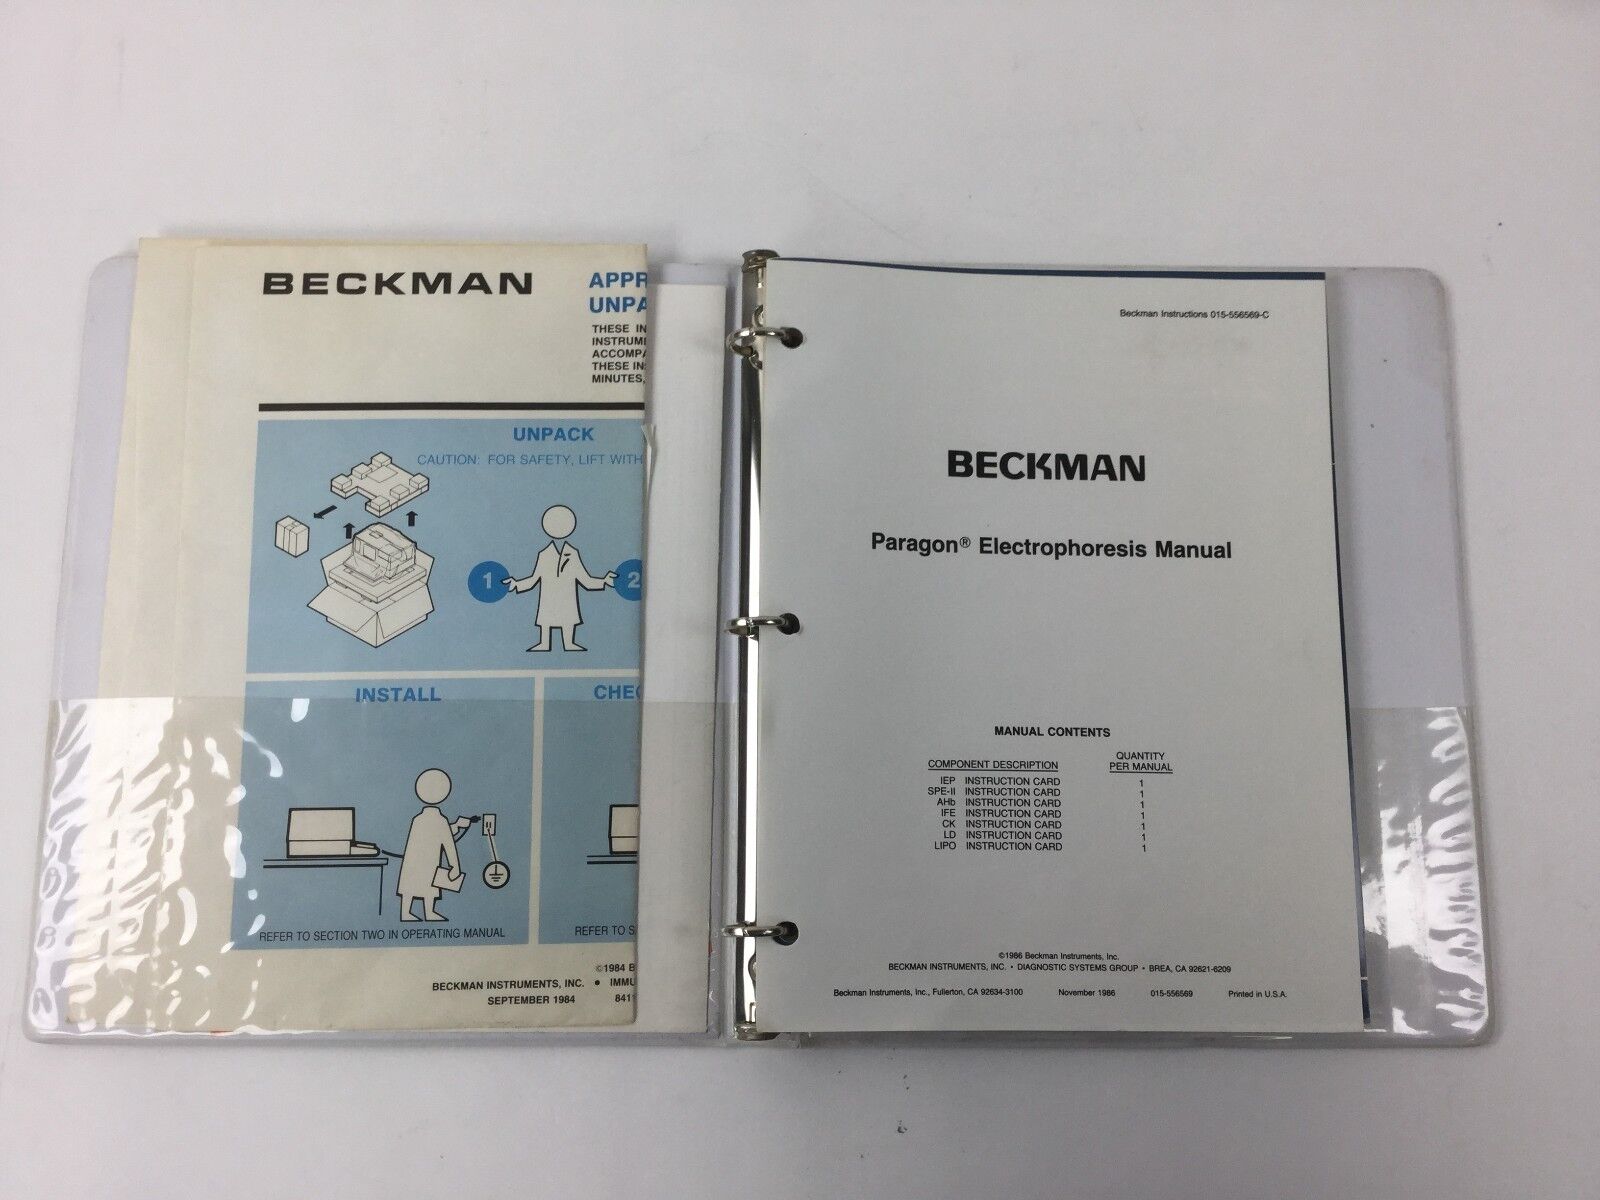 Beckman Paragon Electrophoresis Manual